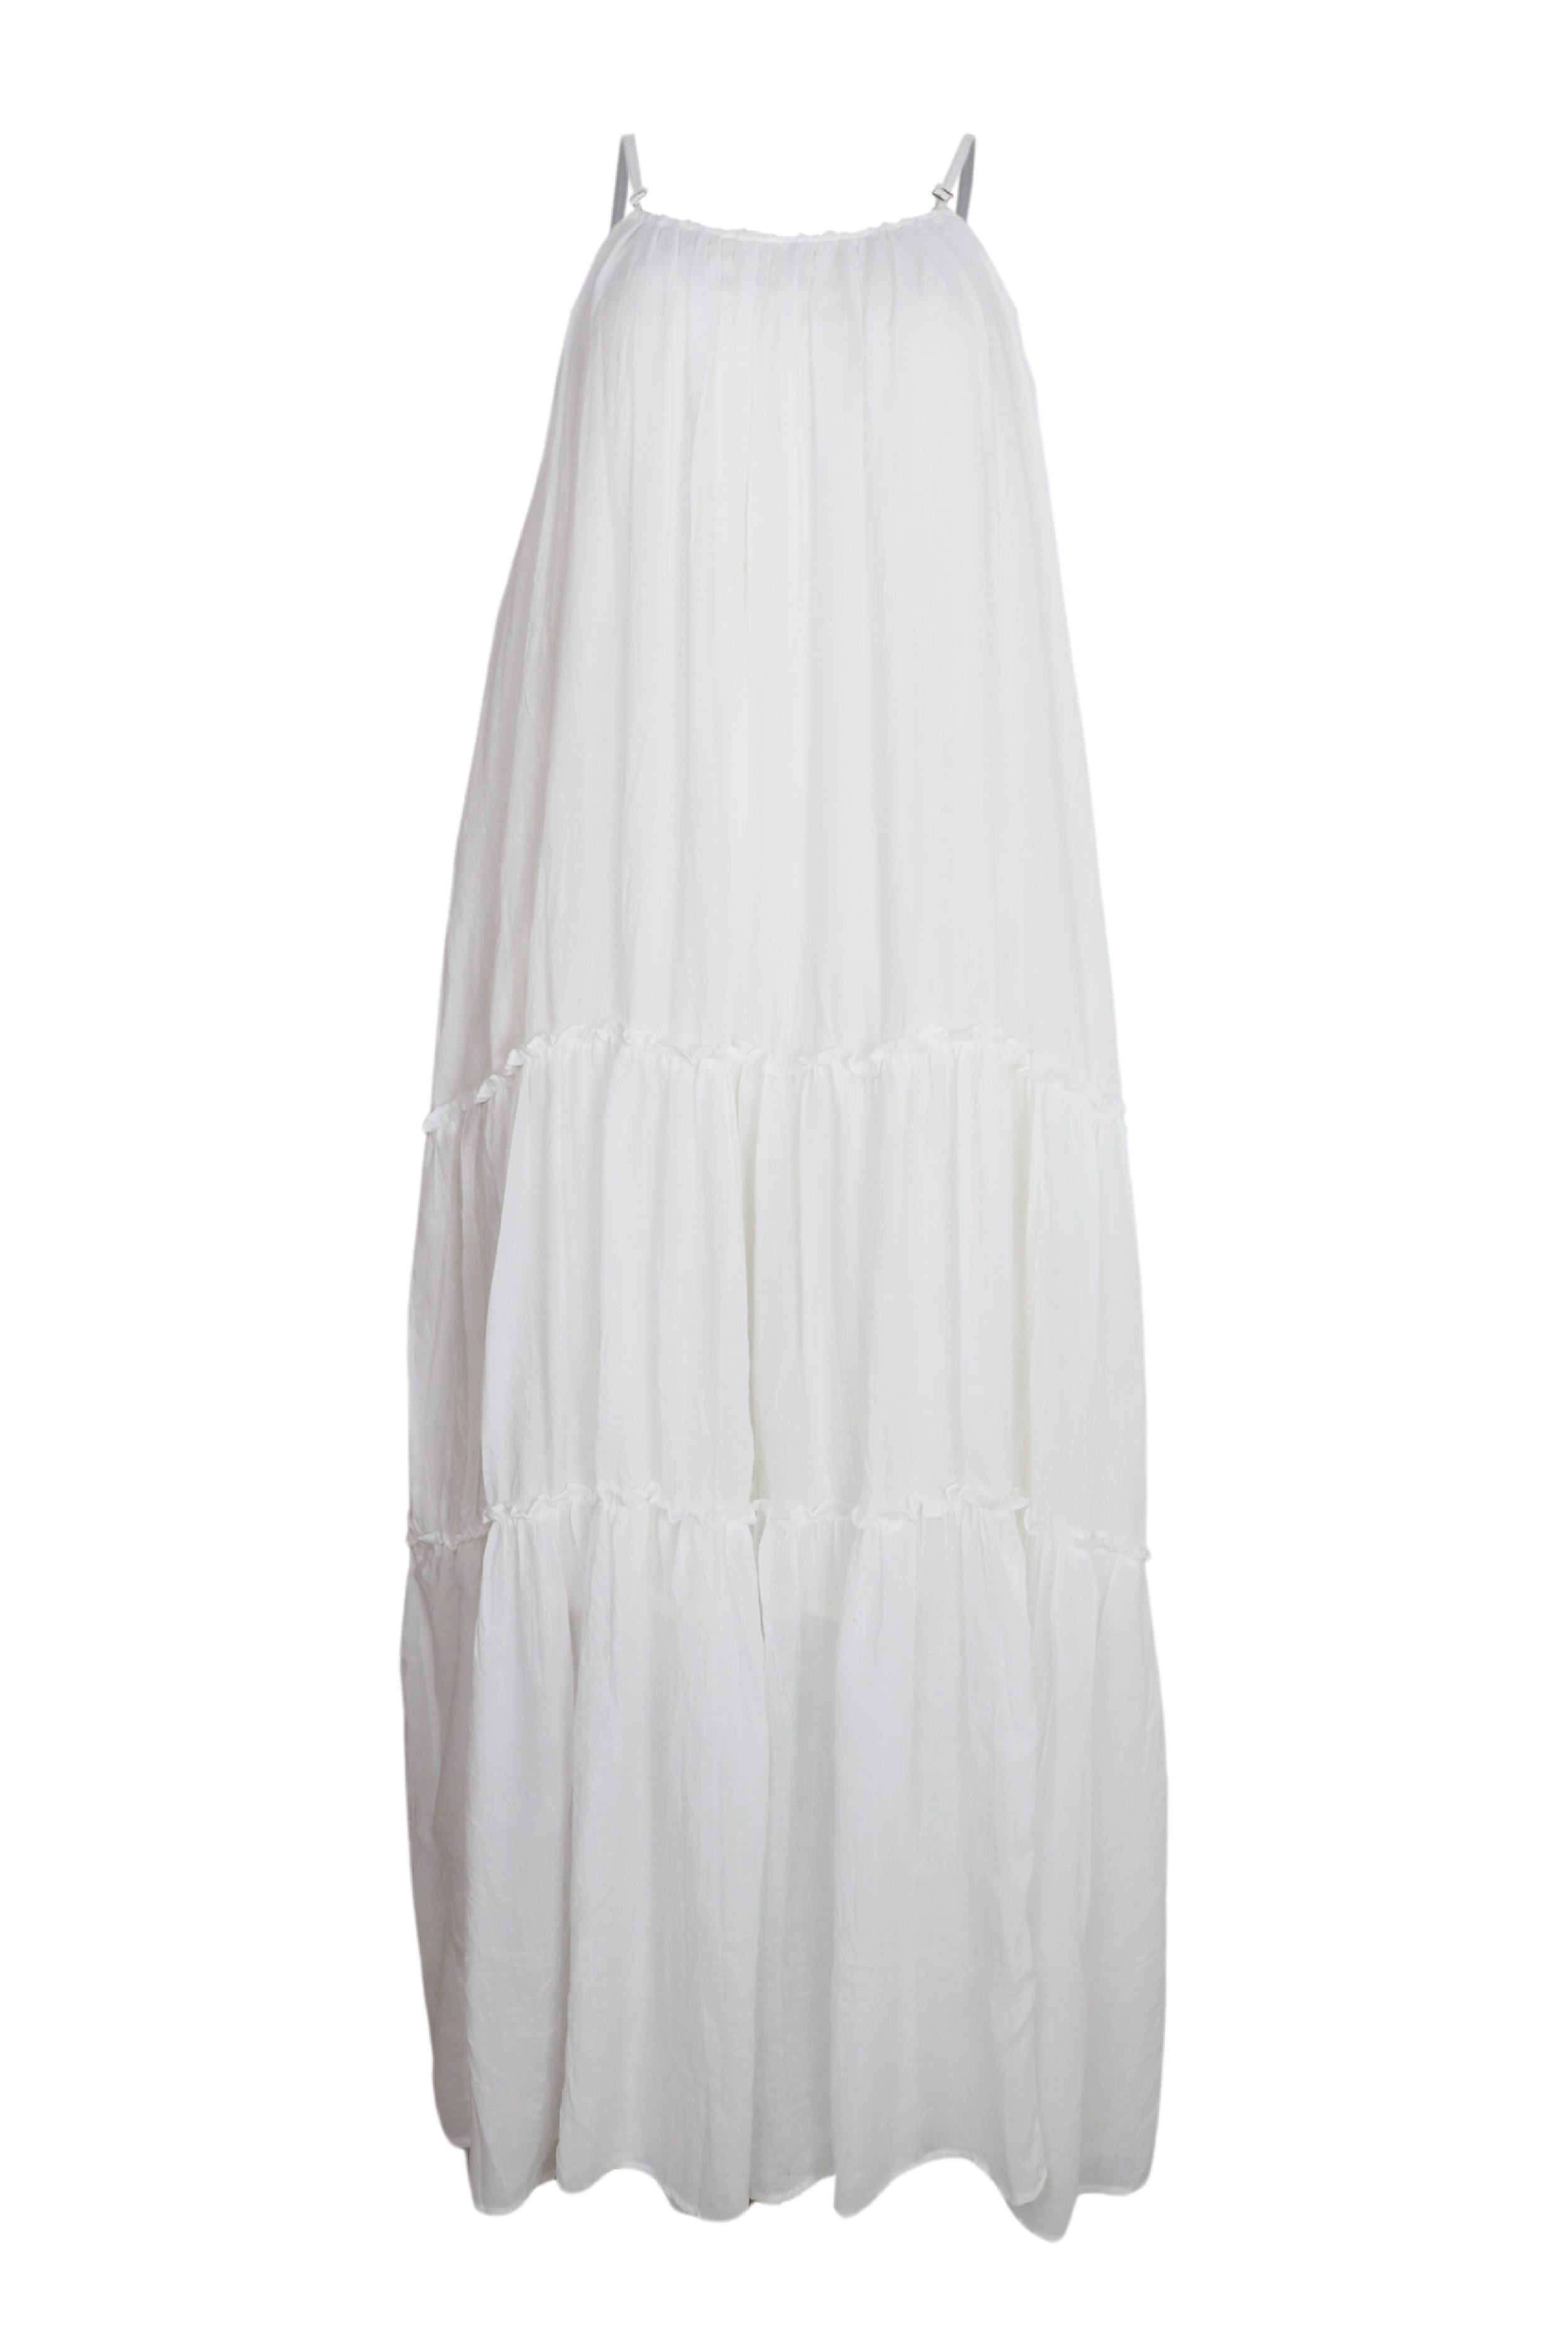 Hermoso vestito largo de tiras en hombros color blanco